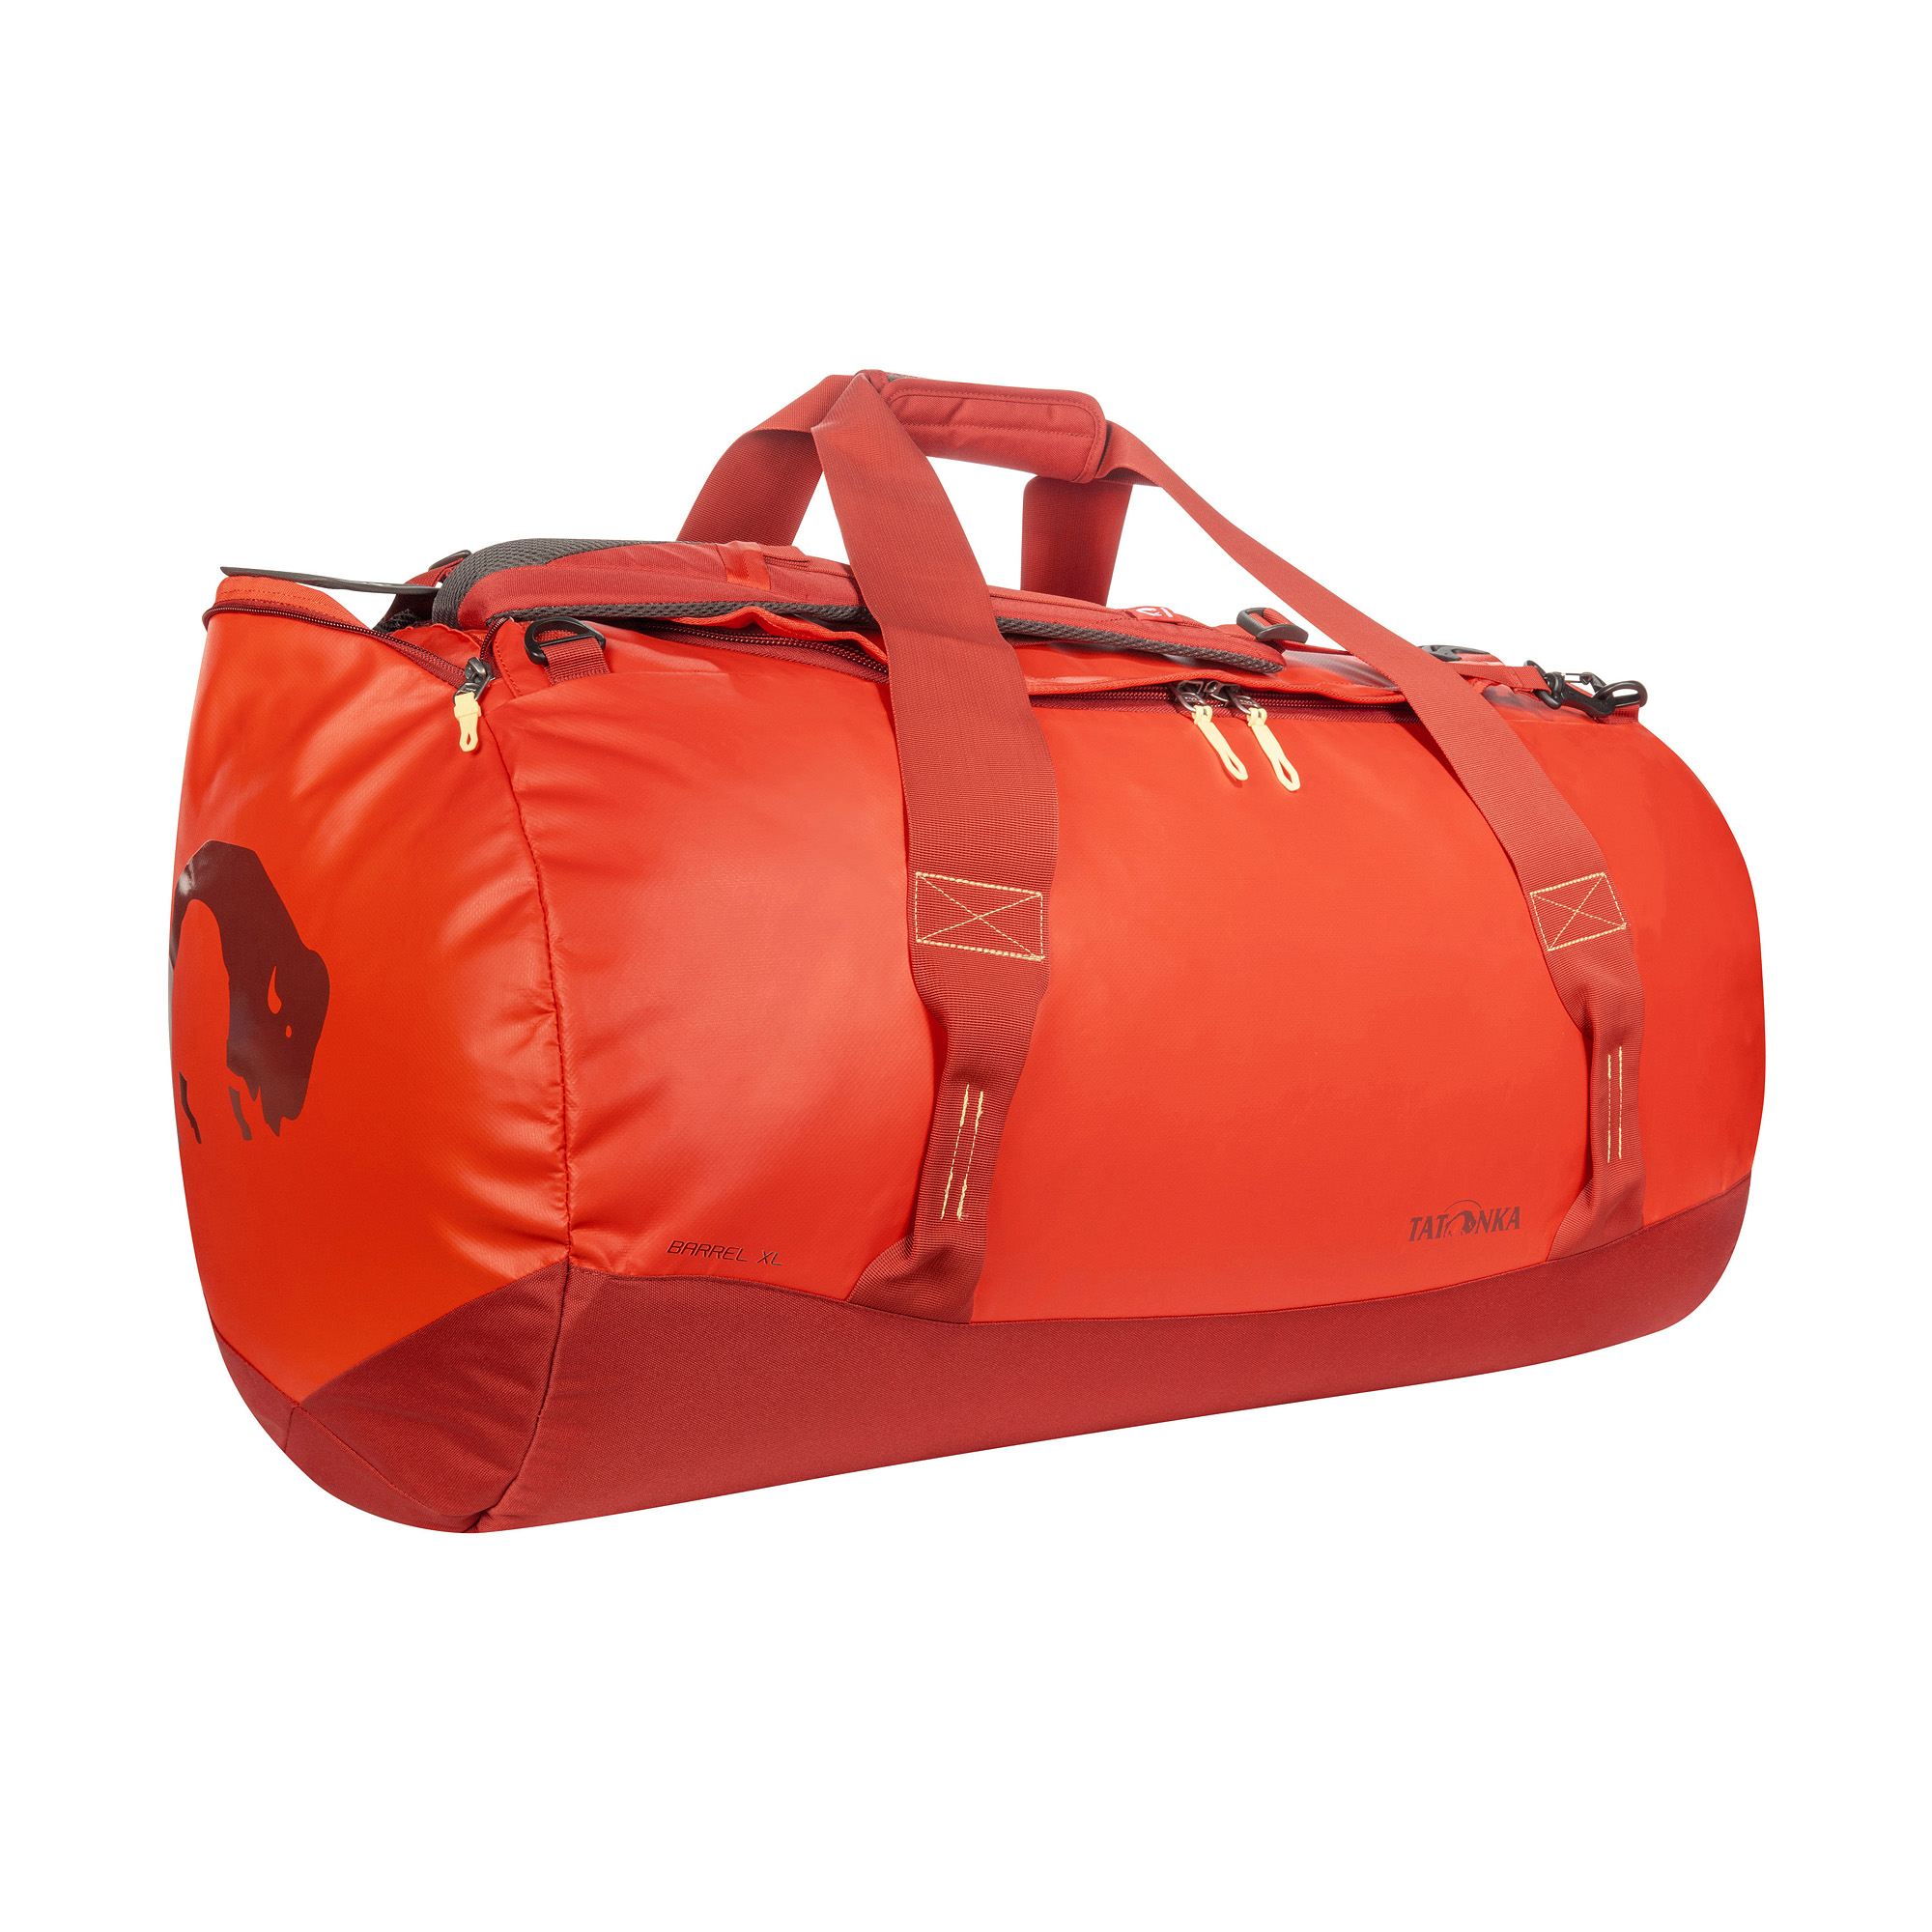 Gepäck, Zubehor, Tasche, Handtasche, Tatonka Barrel XL red orange rot Reisetaschen 4013236335446